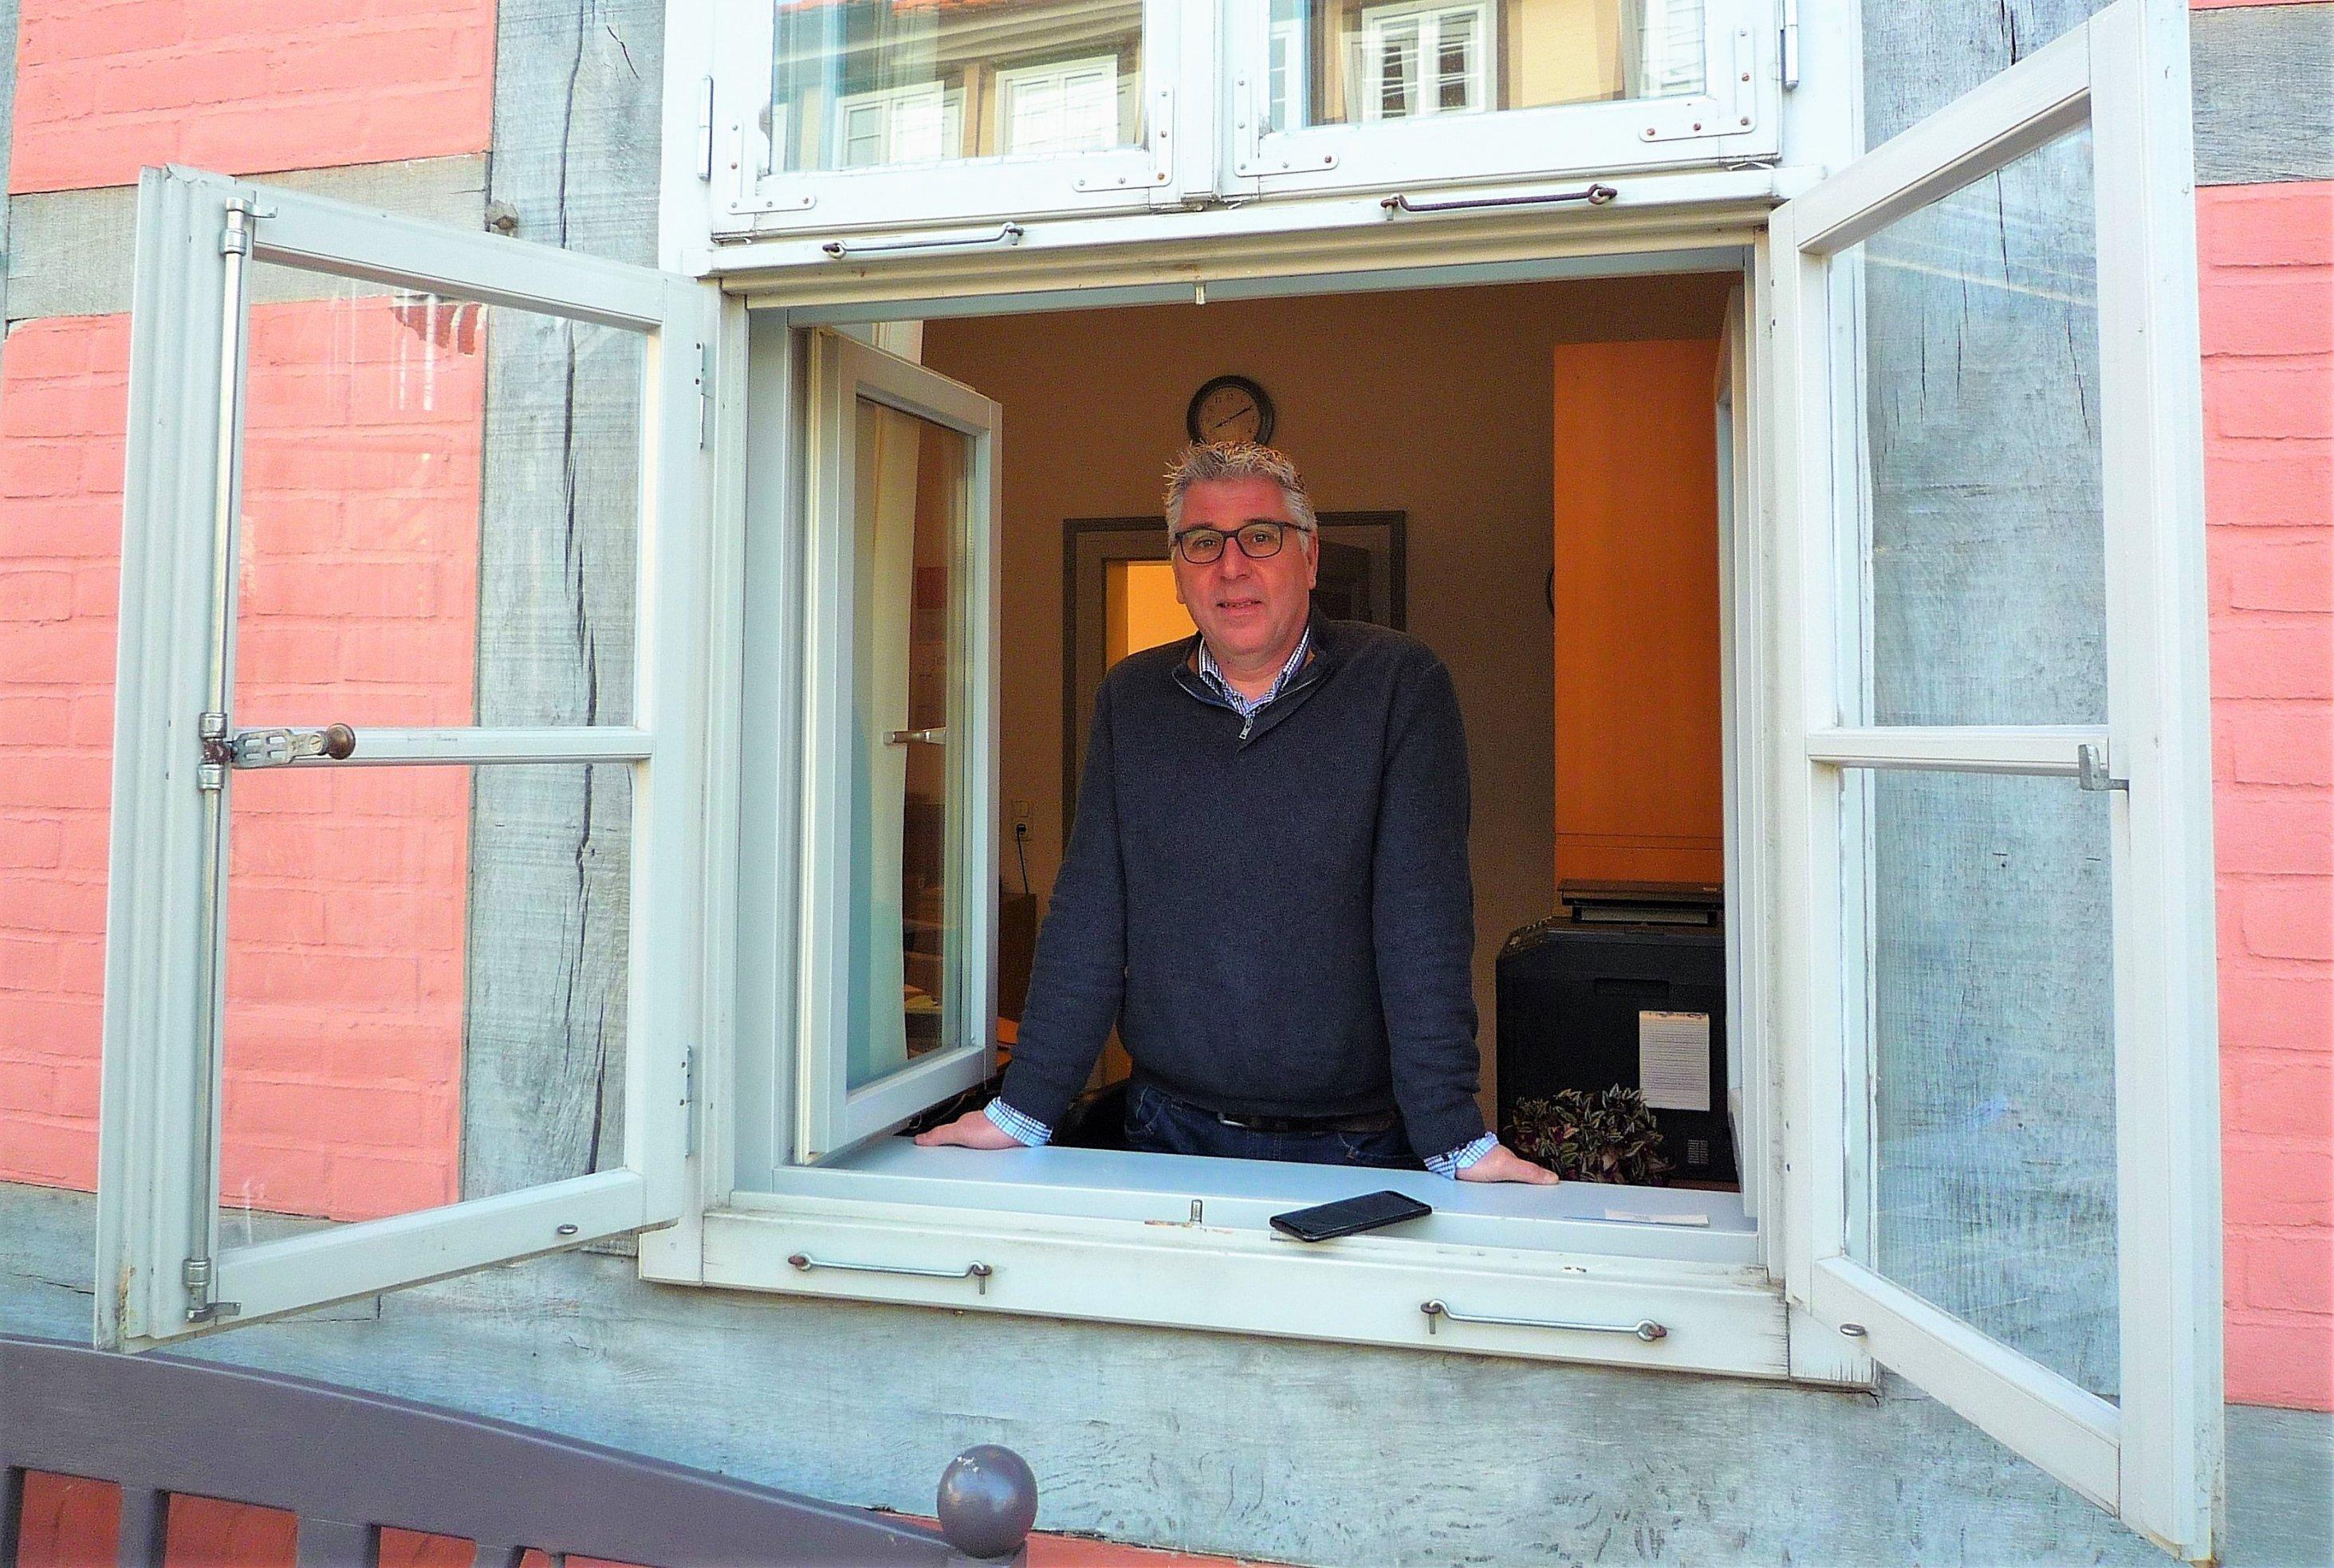 Mann mit Brille und Pullover stützt sich von innen auf das Brett des Fensters, dessen Flügel weit nach außen offenstehen.